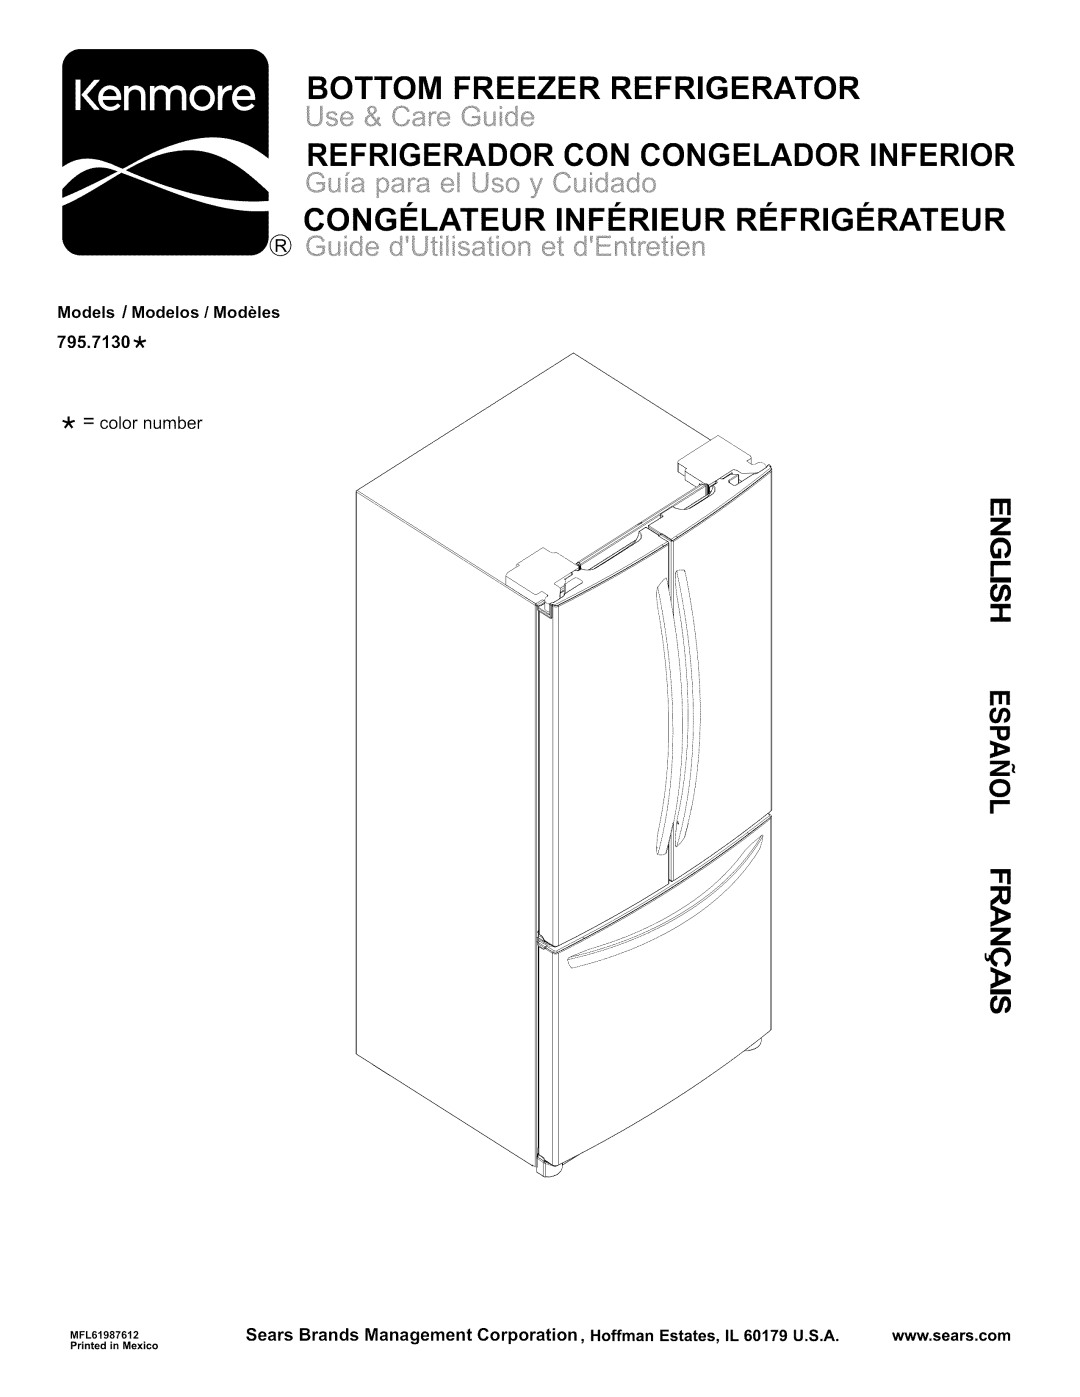 Kenmore 795.7130-K manual Bottom Freezer Refrigerator, Refrigerador Con Congelador Inferior, Ill t 